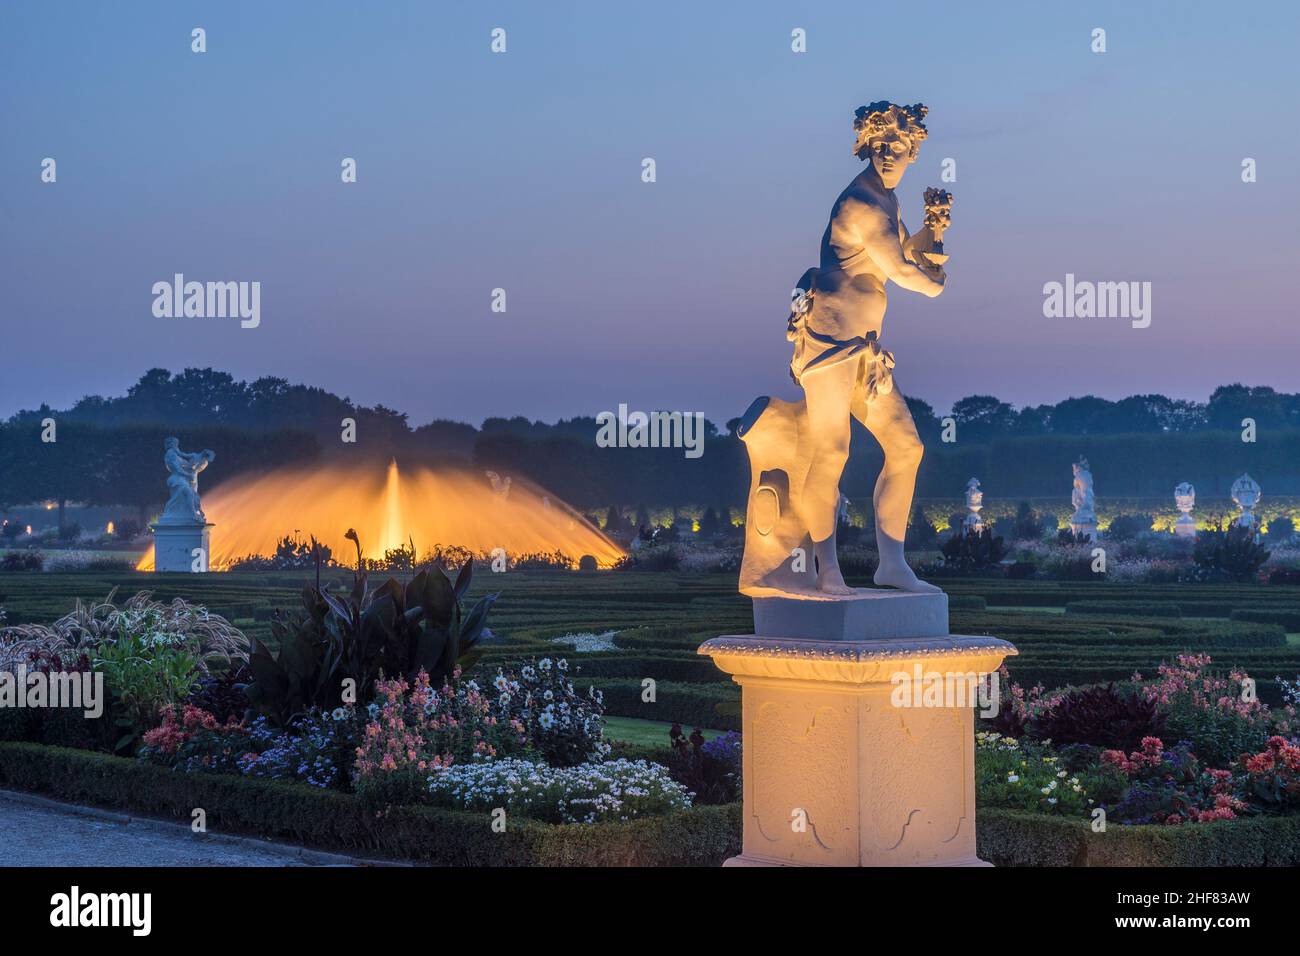 Allemagne, Basse-Saxe, Hanovre, sculpture Bacchus / automne des jardins de Herrenhausen dans la soirée Banque D'Images